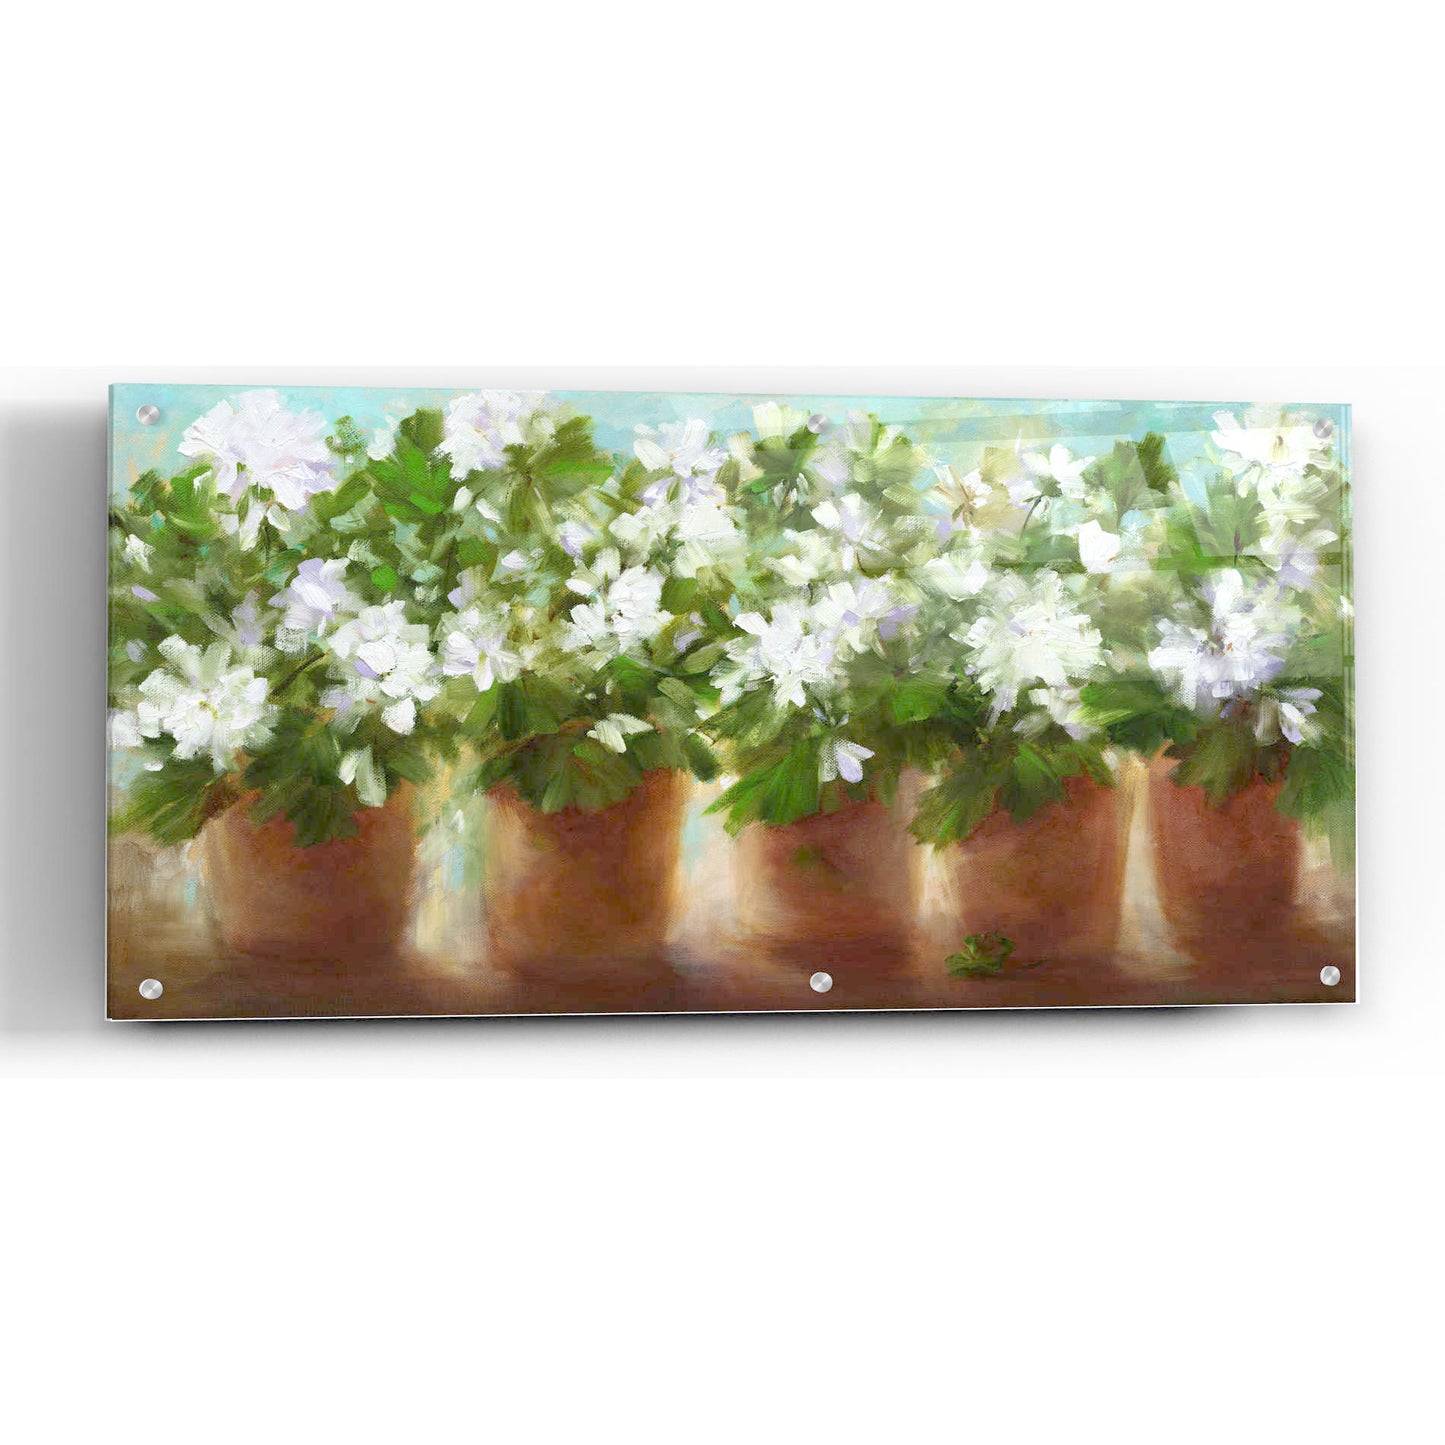 Epic Art 'In Full Bloom' by Sheila Finch, Acrylic Glass Wall Art,48x24